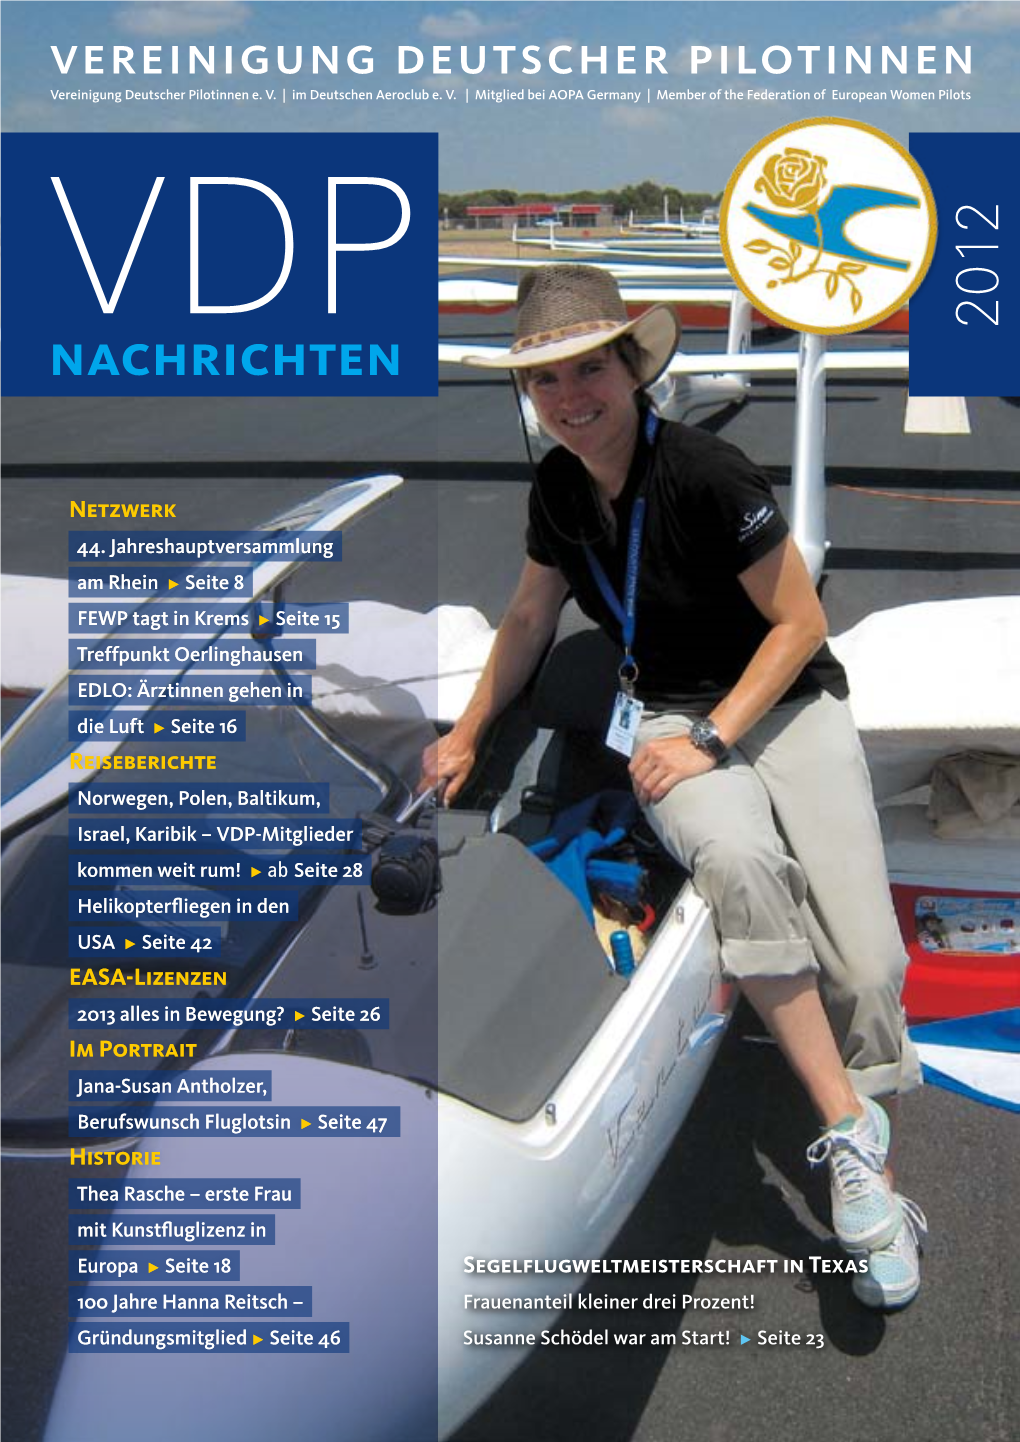 Nachrichten 2012 Editorial Liebe Pilotinnen, Förderer Und Freunde Der VDP, Wir Durchleben Eine Spannende Zeit – Auch in Der Luftfahrt